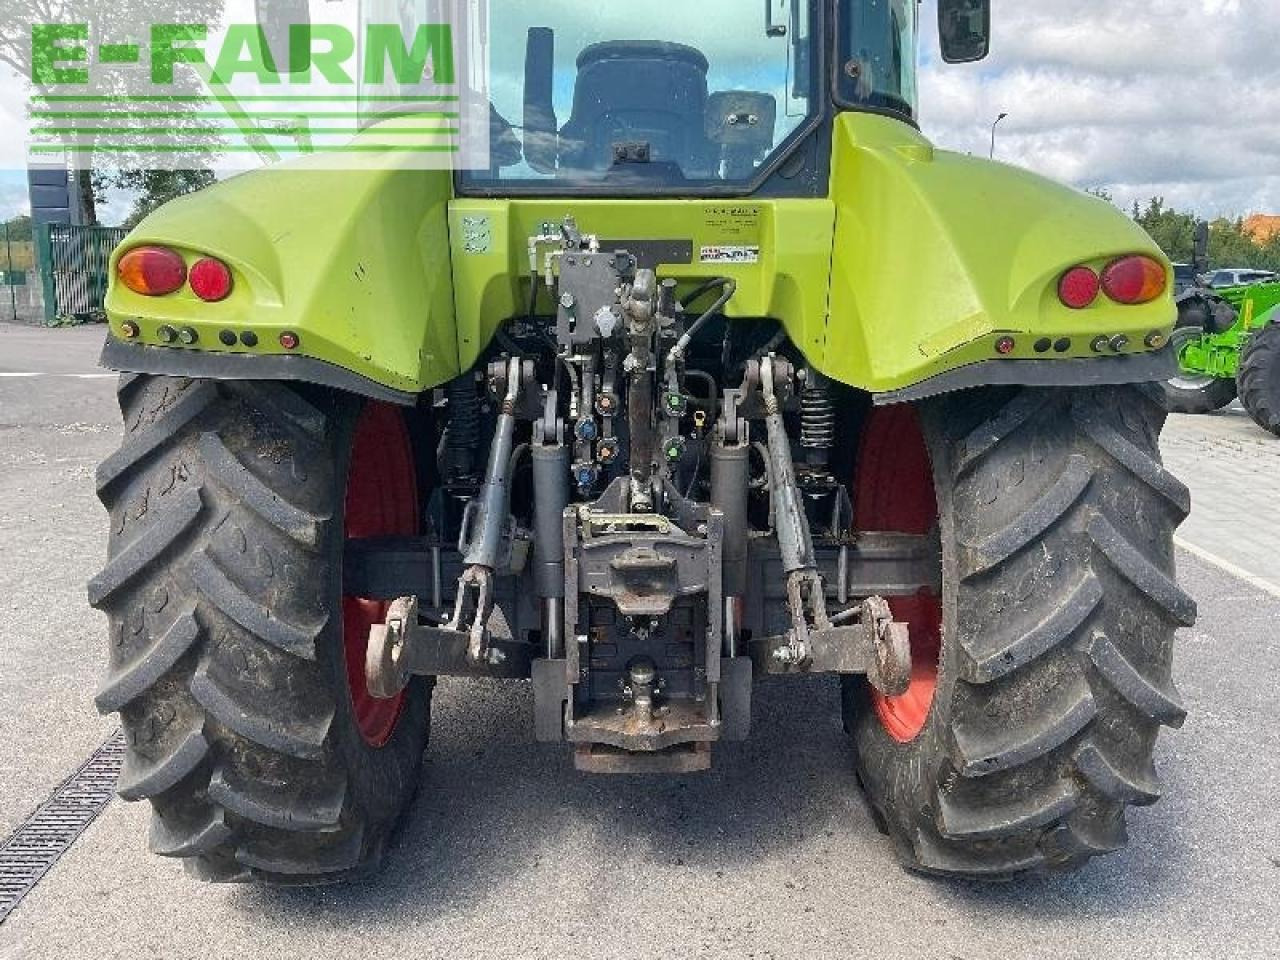 Farm tractor CLAAS marque claas